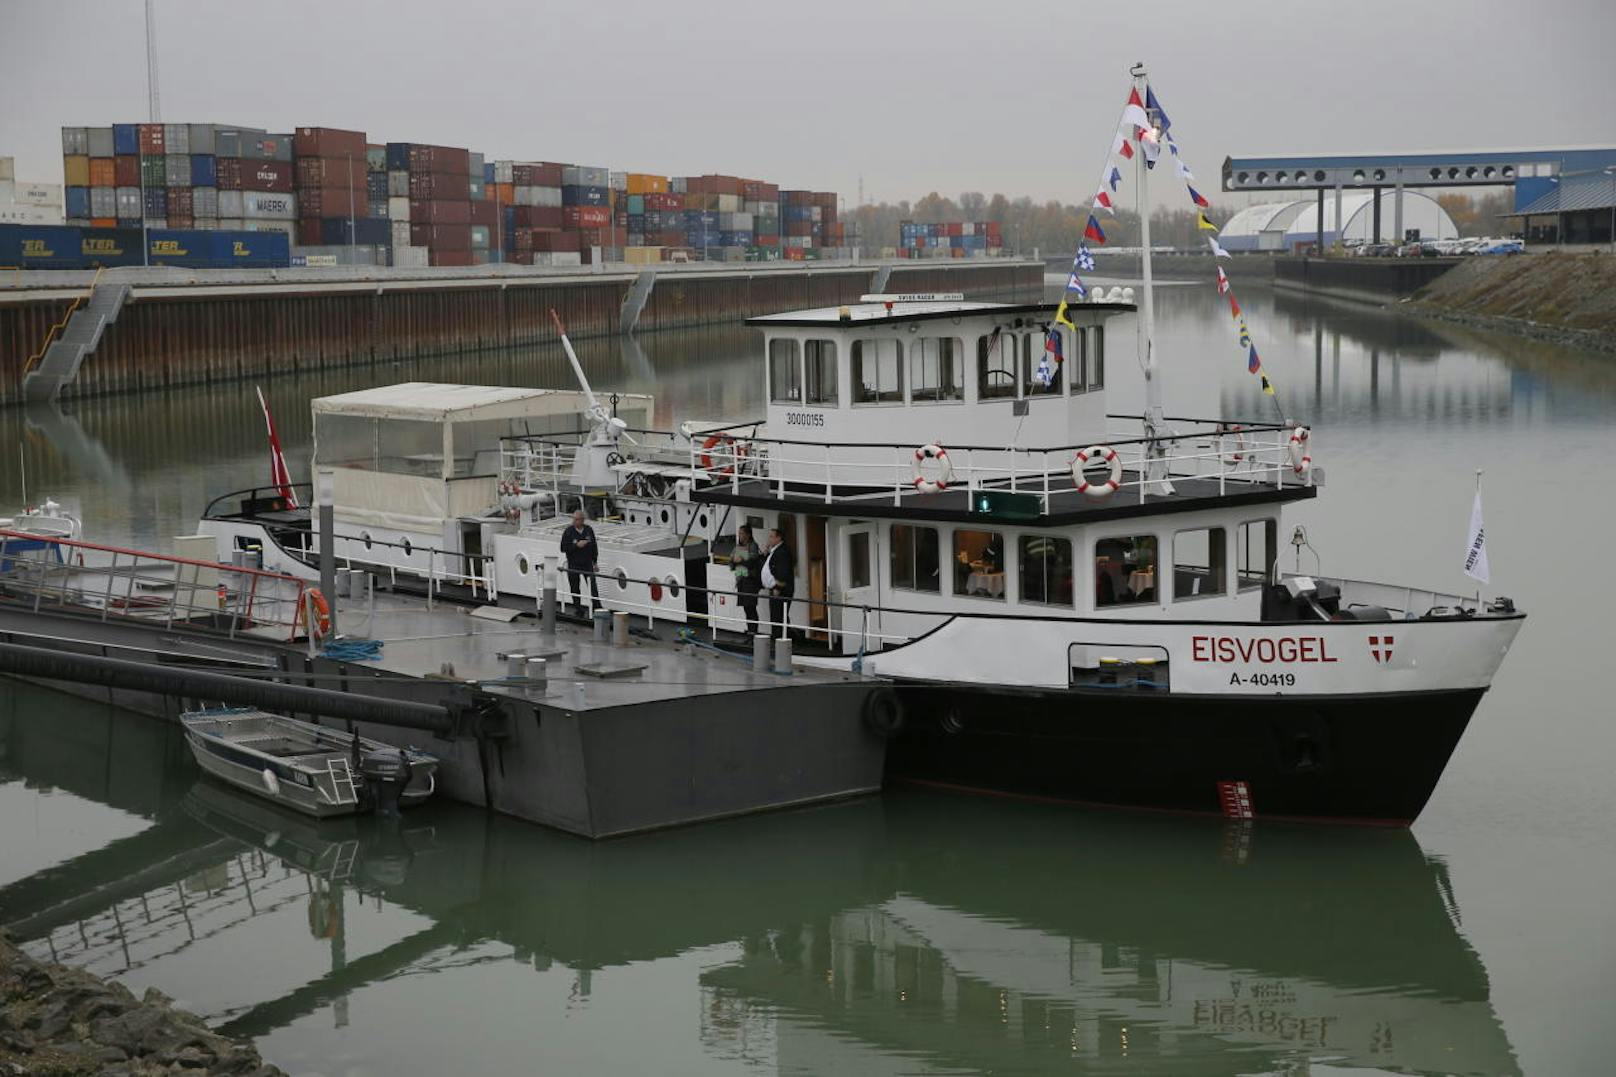 Die MS Eisvogel ist wieder startklar für den Einsatz auf der Donau.